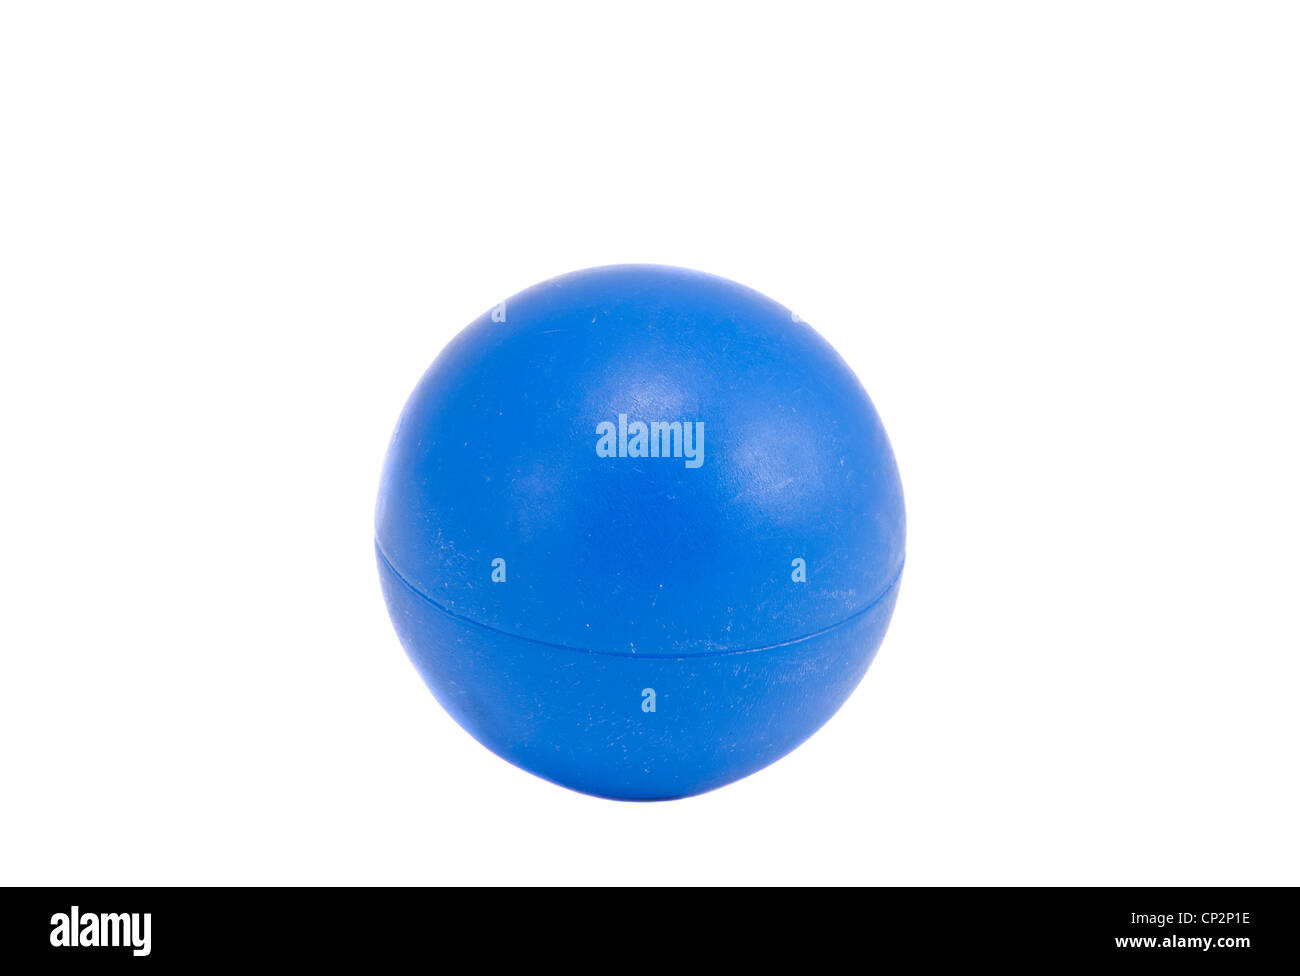 small white plastic balls